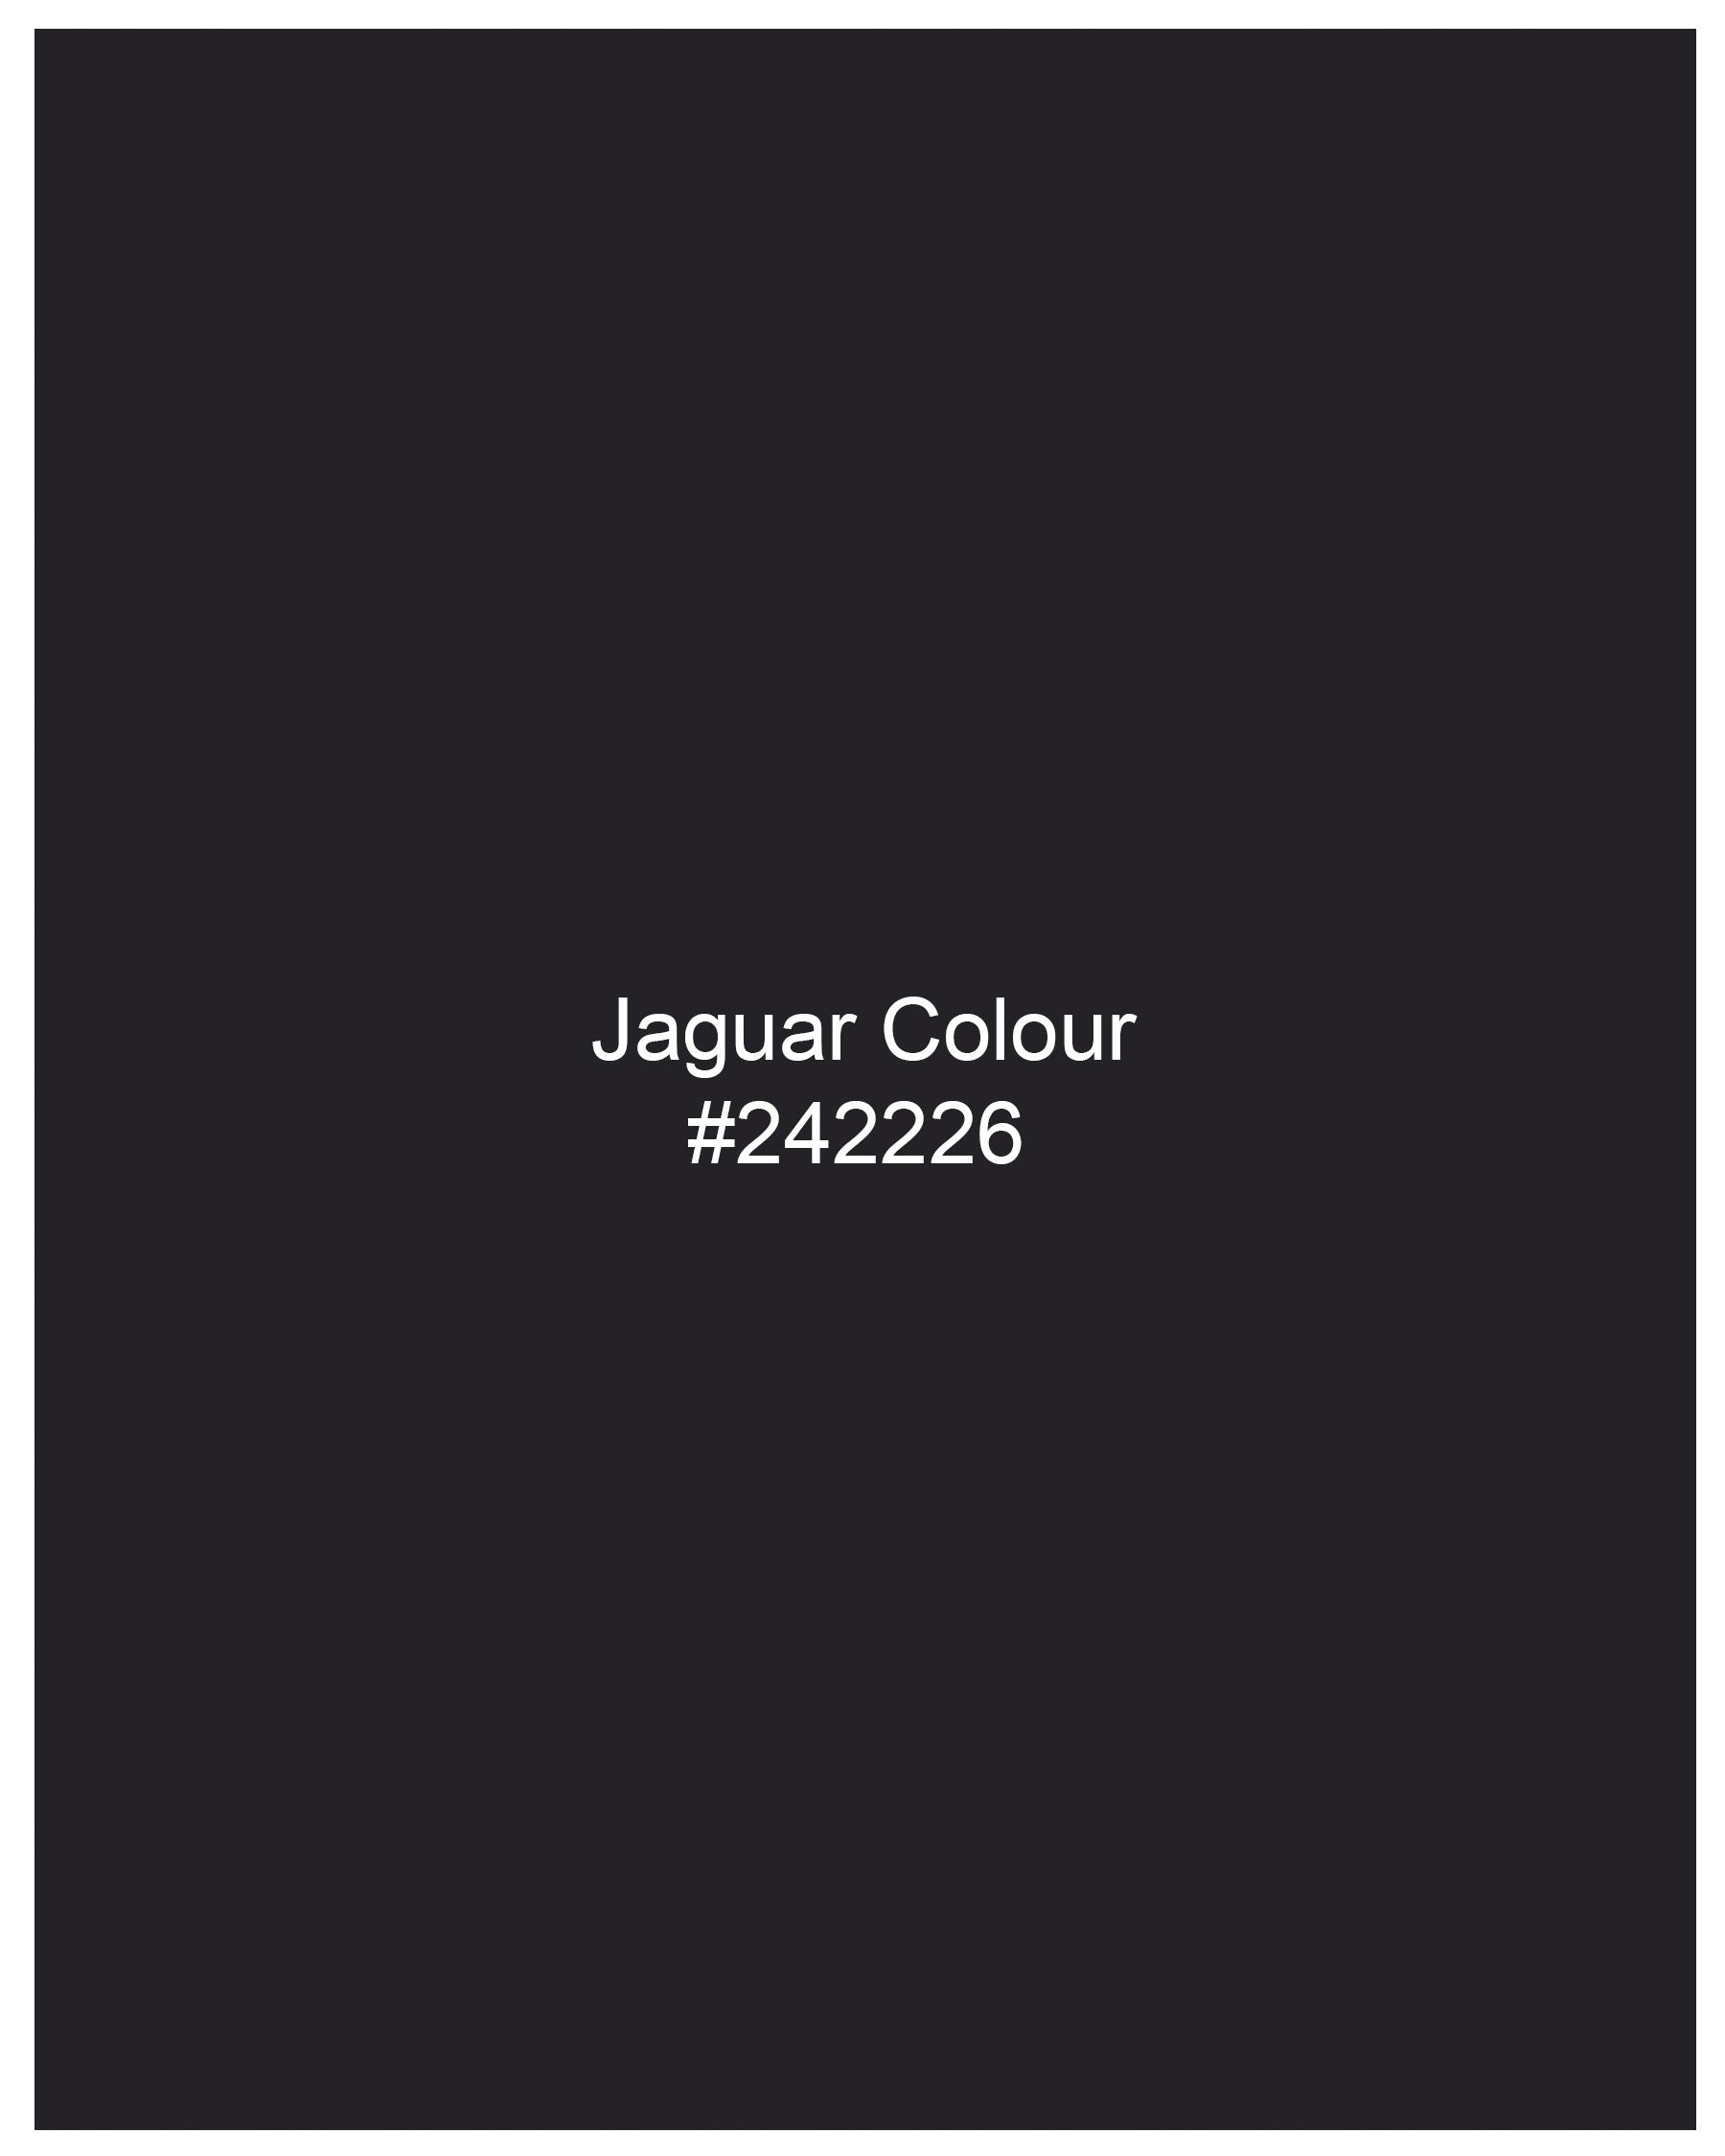 Jaguar Black Textured Waistcoat V2120-36, V2120-38, V2120-40, V2120-42, V2120-44, V2120-46, V2120-48, V2120-50, V2120-52, V2120-54, V2120-56, V2120-58, V2120-60